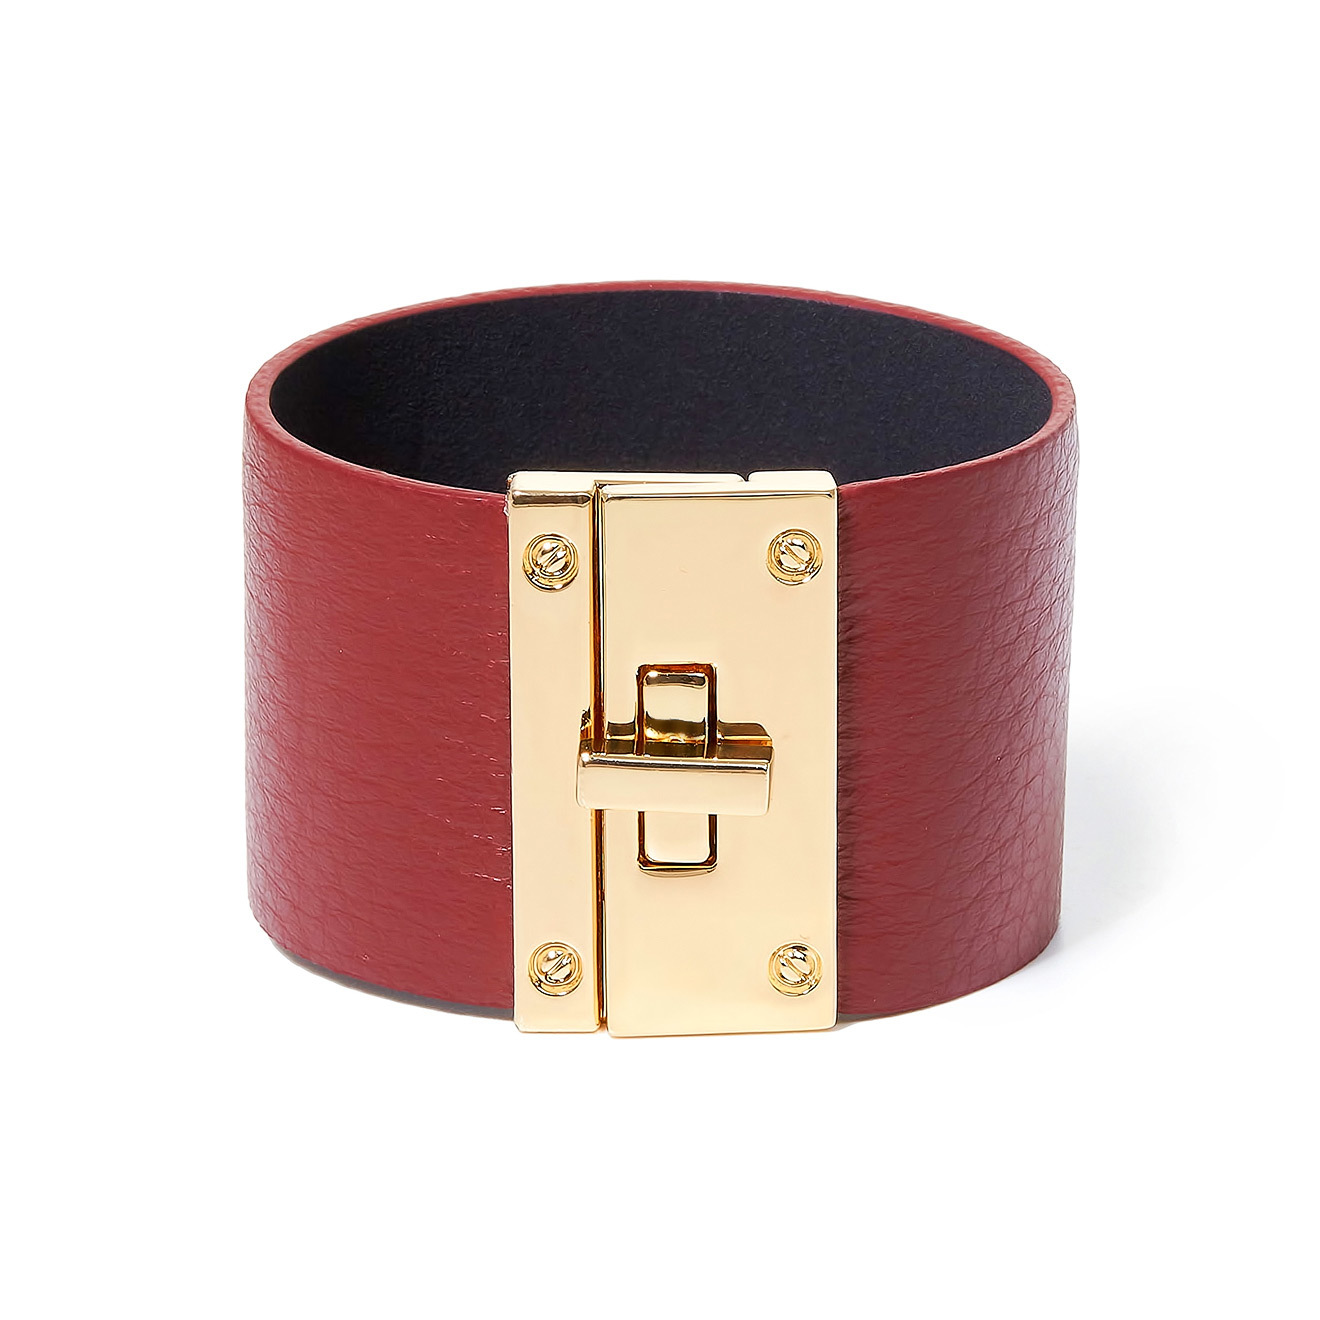 Tannum Бордовый кожаный браслет с металлическим замком tannum двойной белый кожаный браслет с золотистой пряжкой